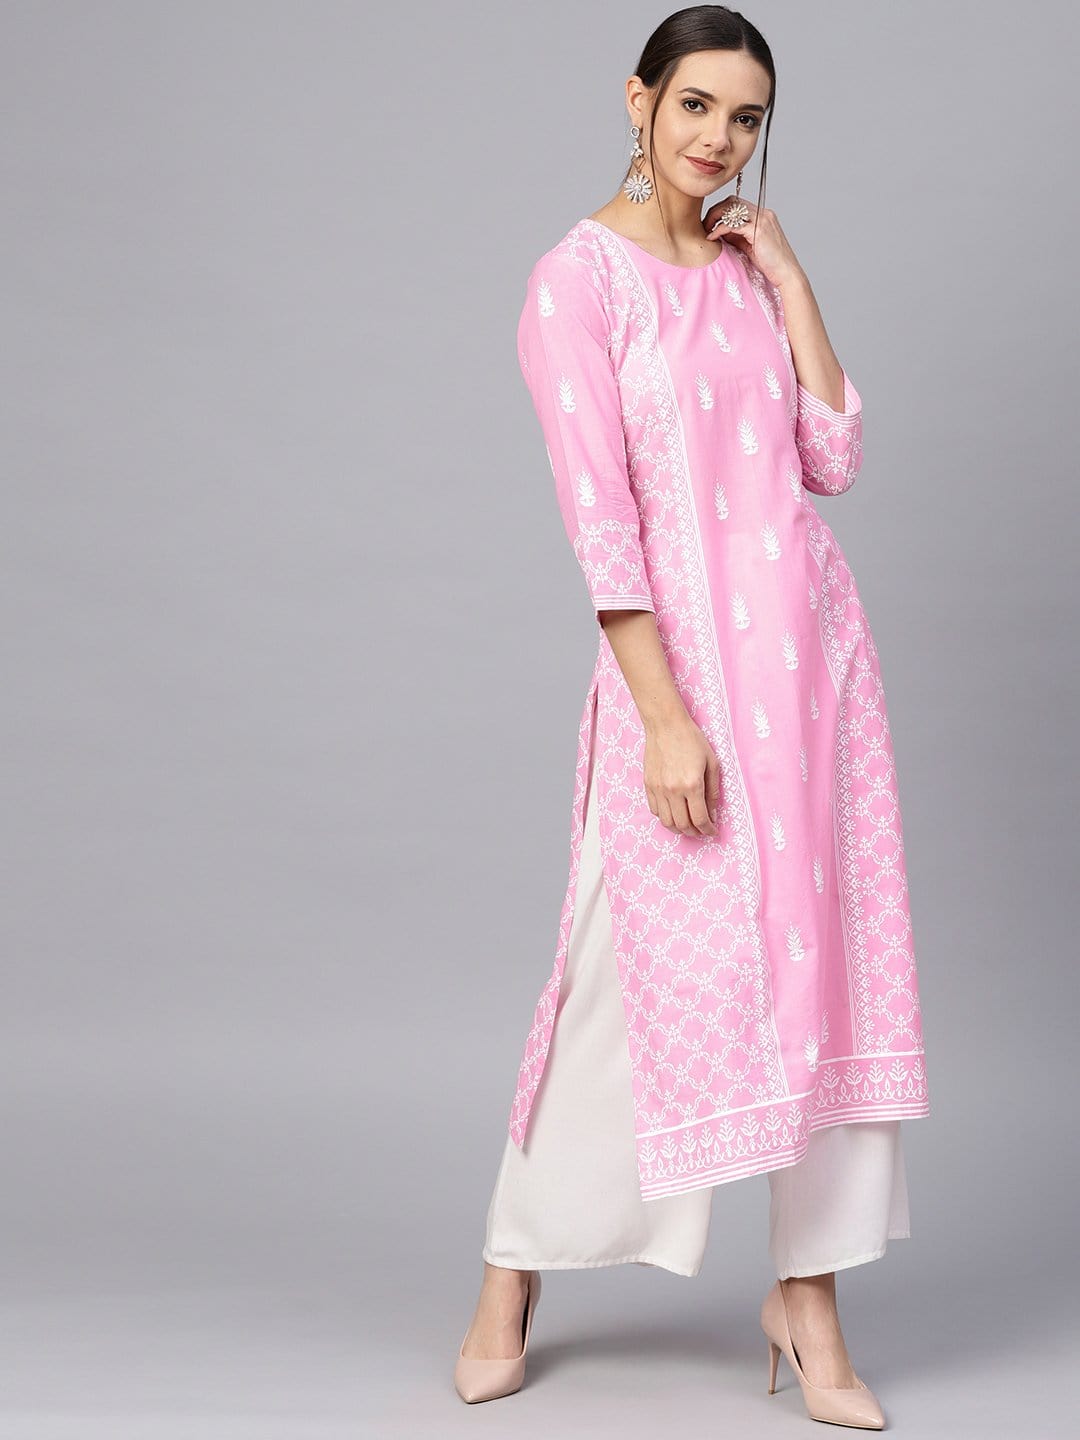 Women's Pink & White Printed Straight Kurta - Varanga